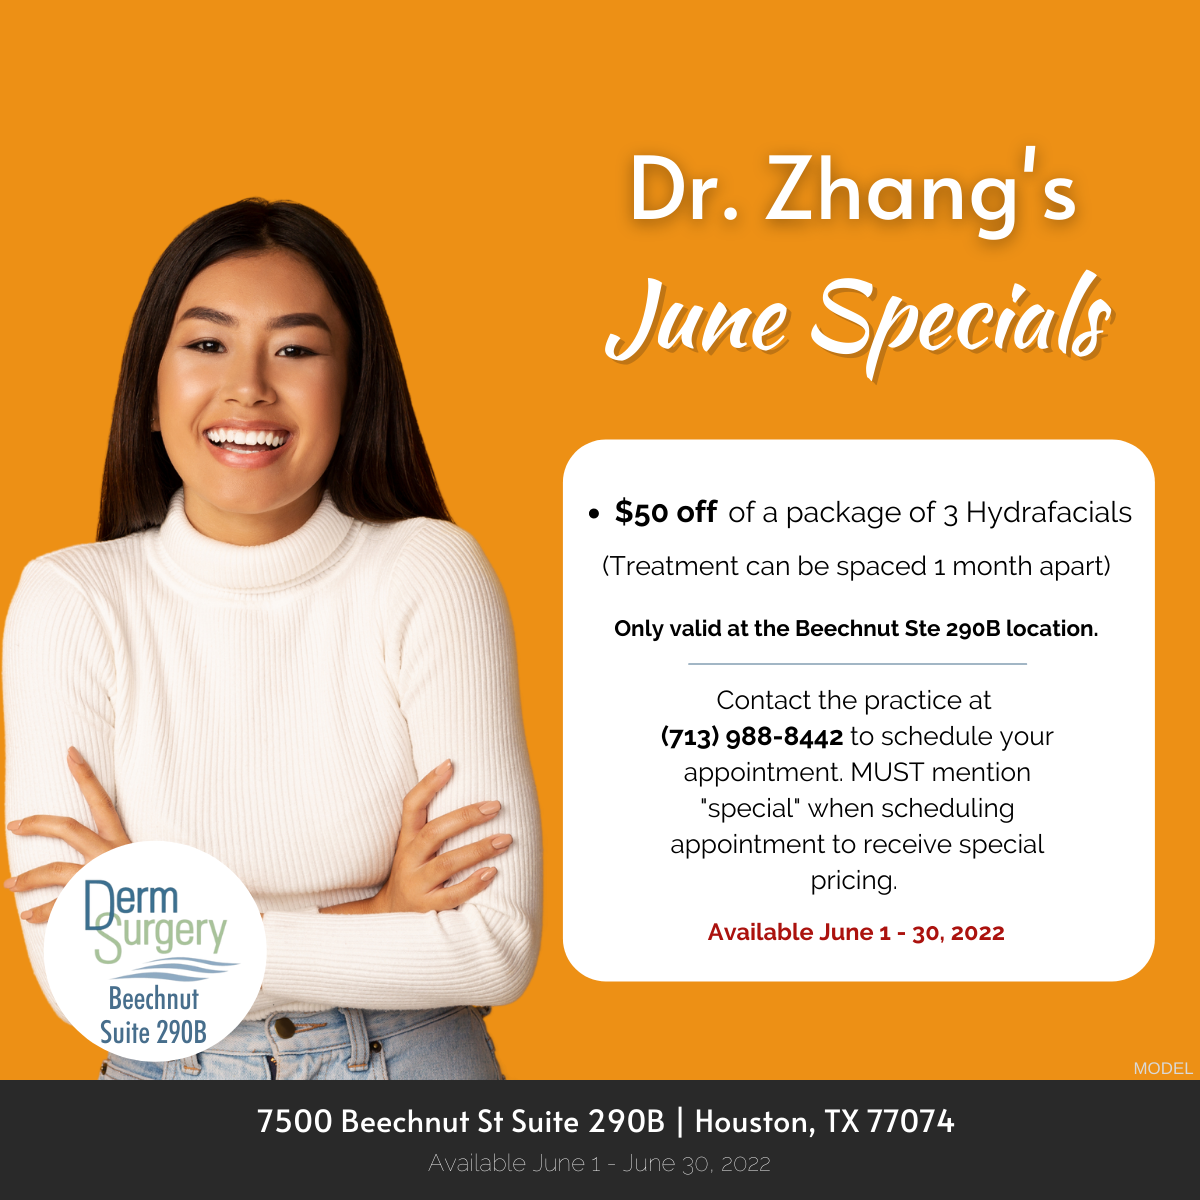 Dr. Zhang's June Specials 2022